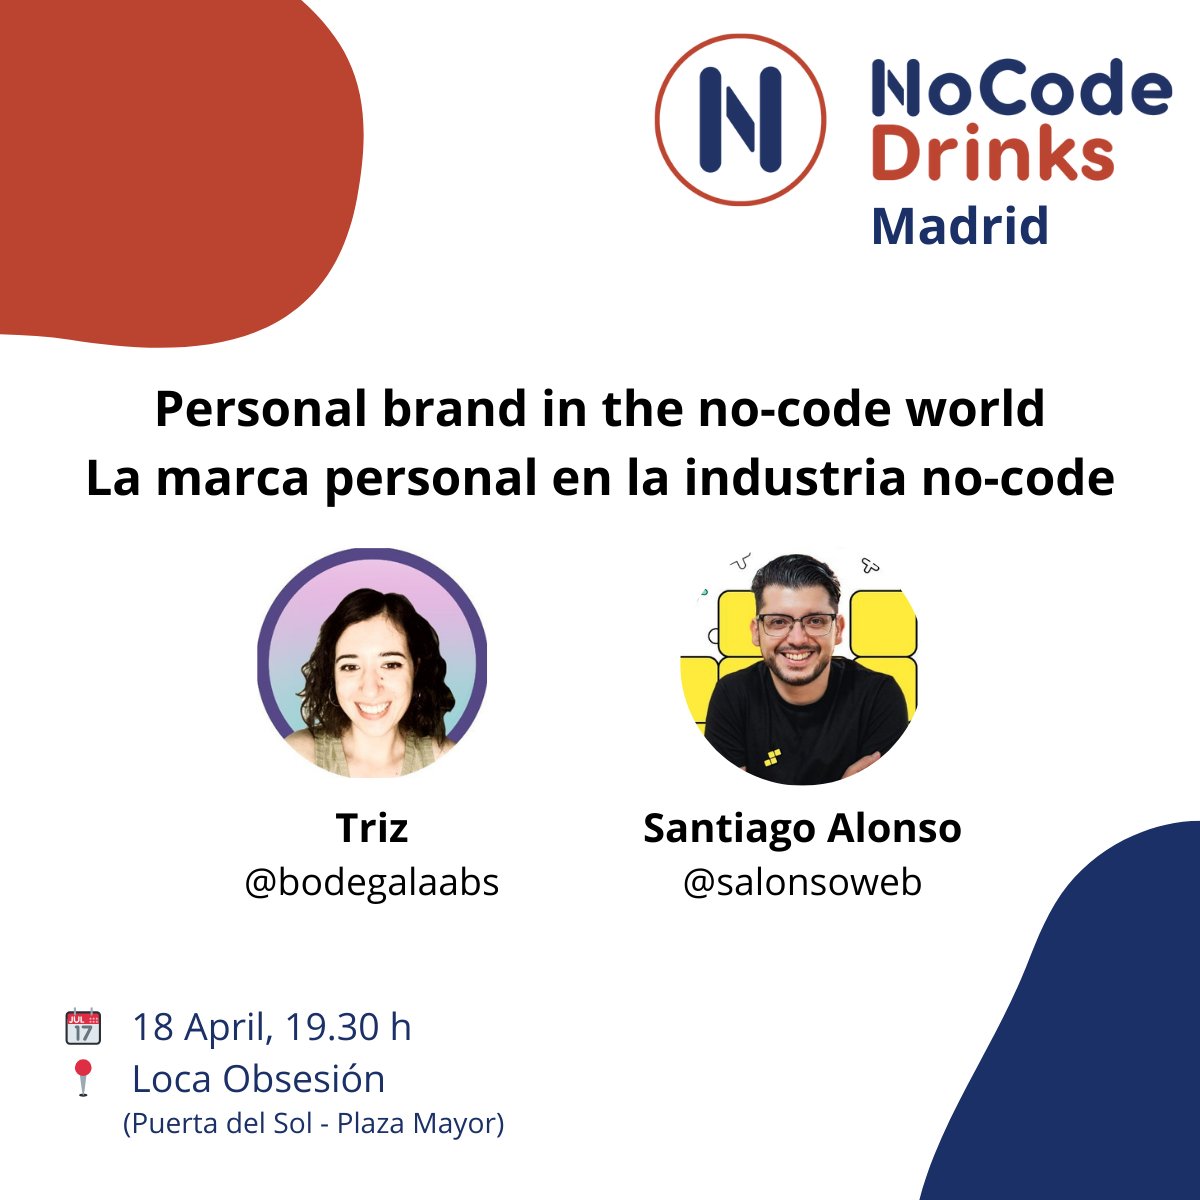 Ya puedo anunciar quién será nuestro segundo invitado especial en el @nocodedrinks #Madrid de hoy.

Nada más y nada menos que @salonsoweb, quien junto a @bodegalaabs nos hablarán de cómo influye la #marcapersonal en la industria #nocode

🎟️ lu.ma/ac8tbd60

#eventosnocode